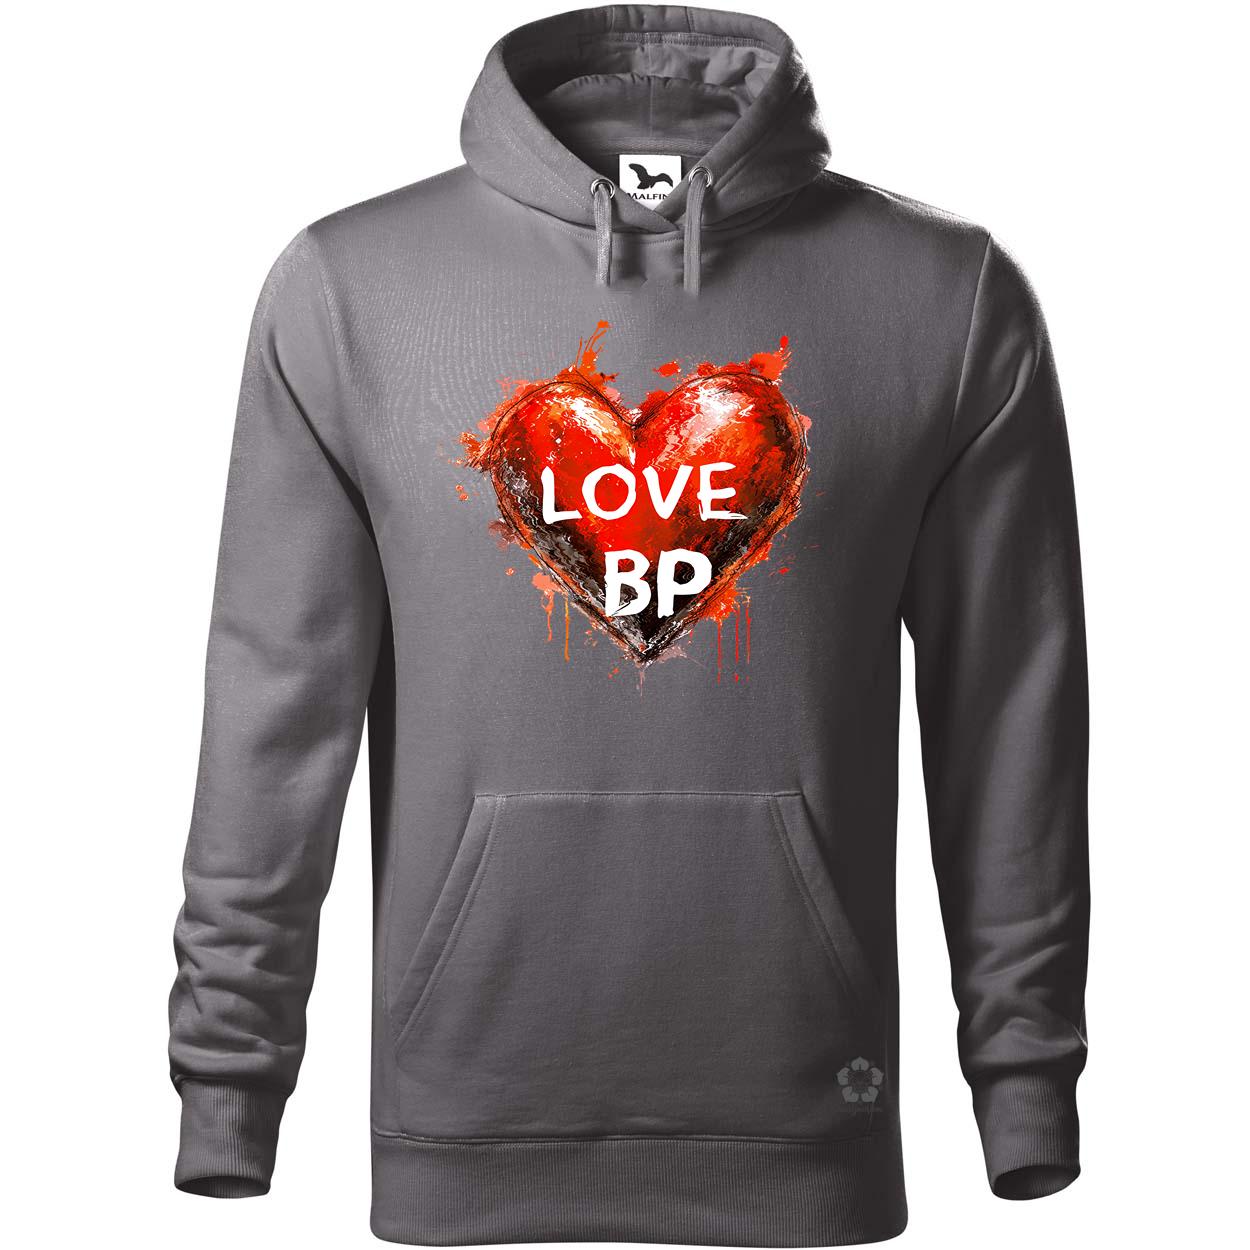 Love BP v9